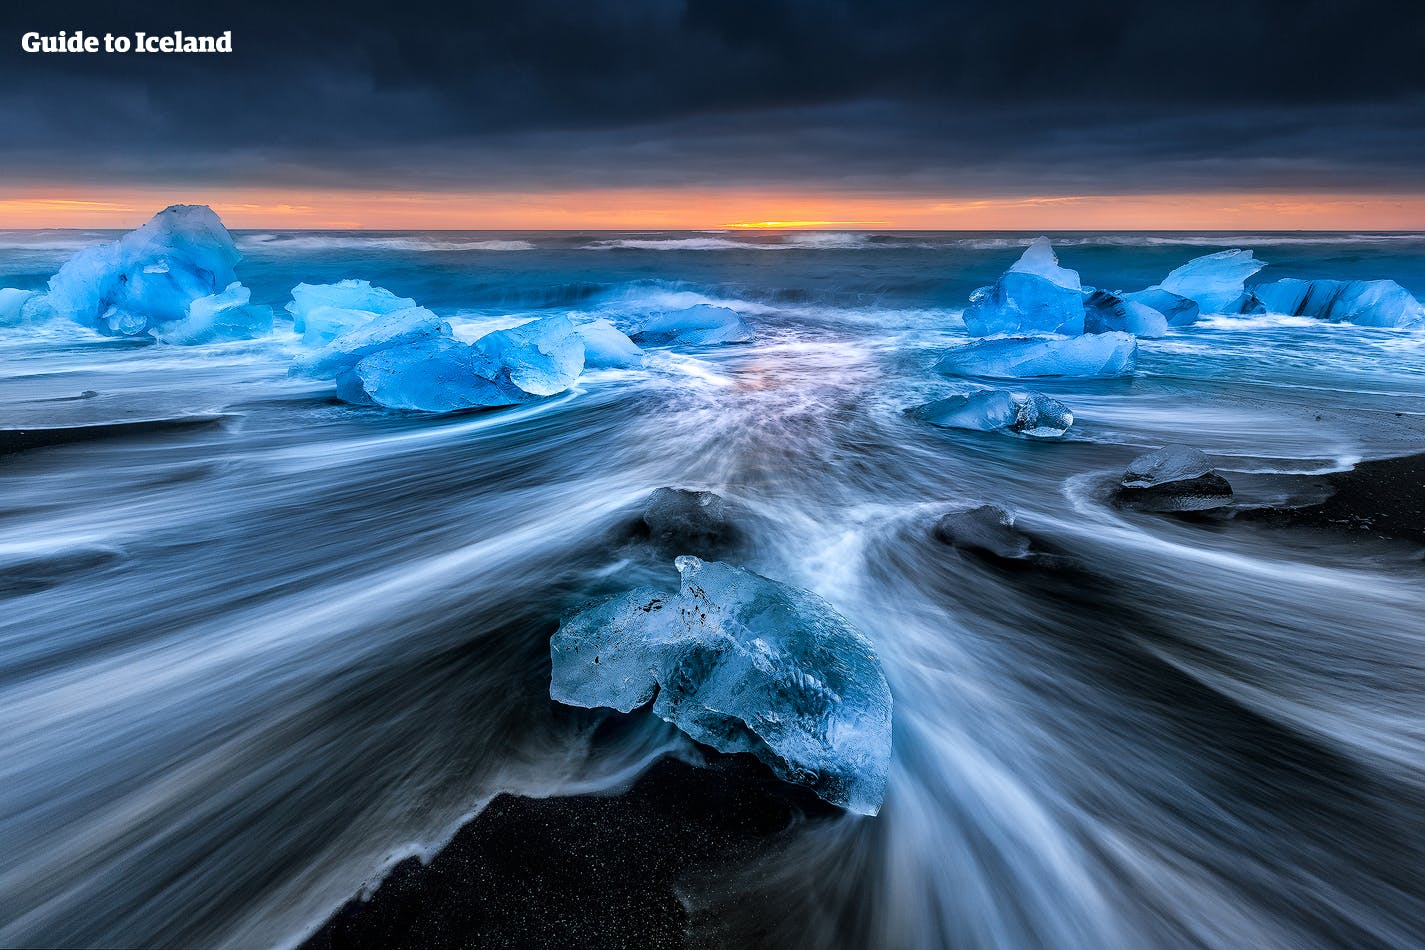 Iceberg sulla spiaggia dei Diamanti, sulla costa meridionale dell'Islanda.